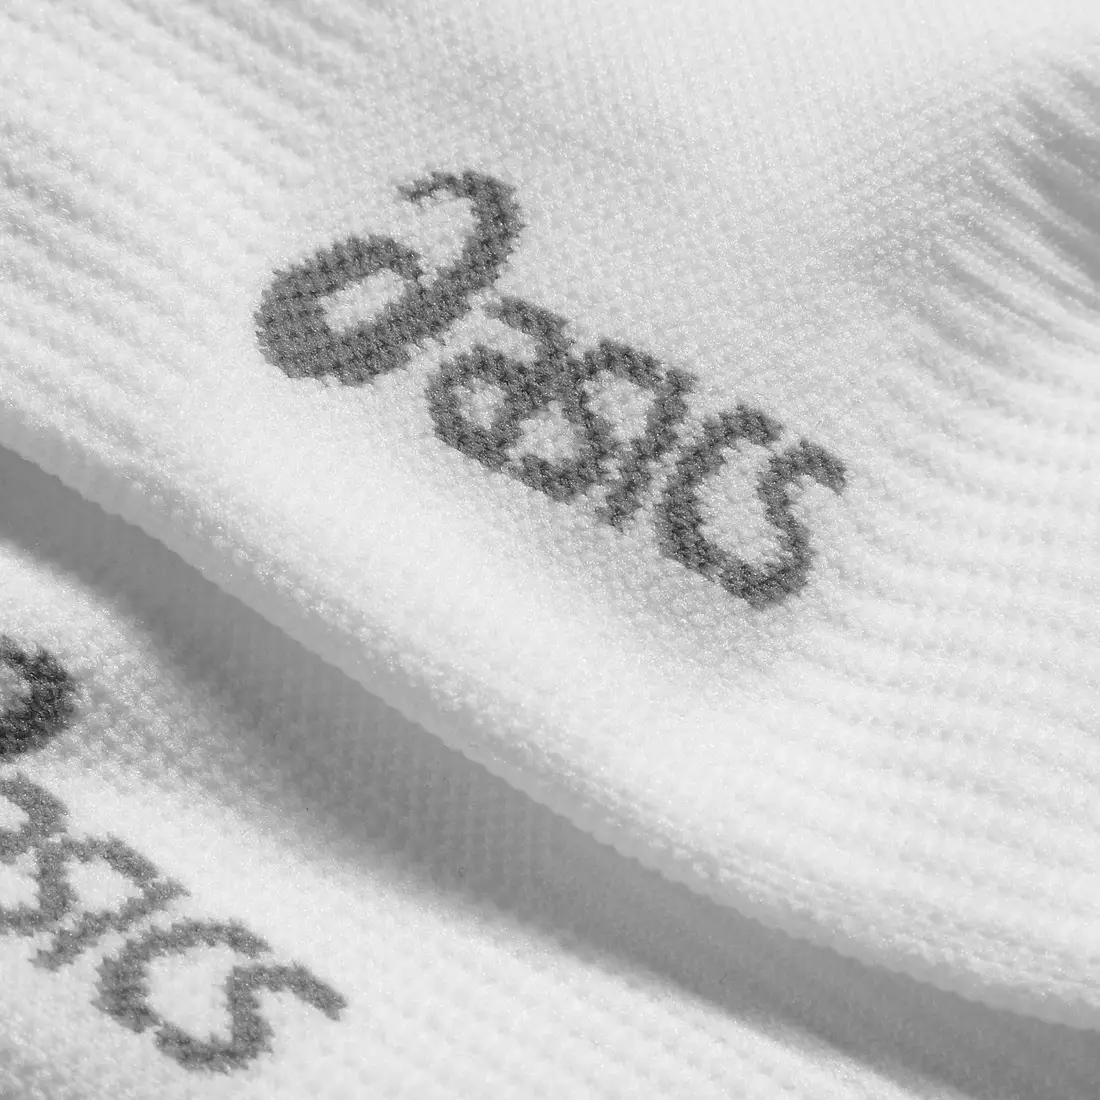 ASICS kompresní ponožky 110524-0001